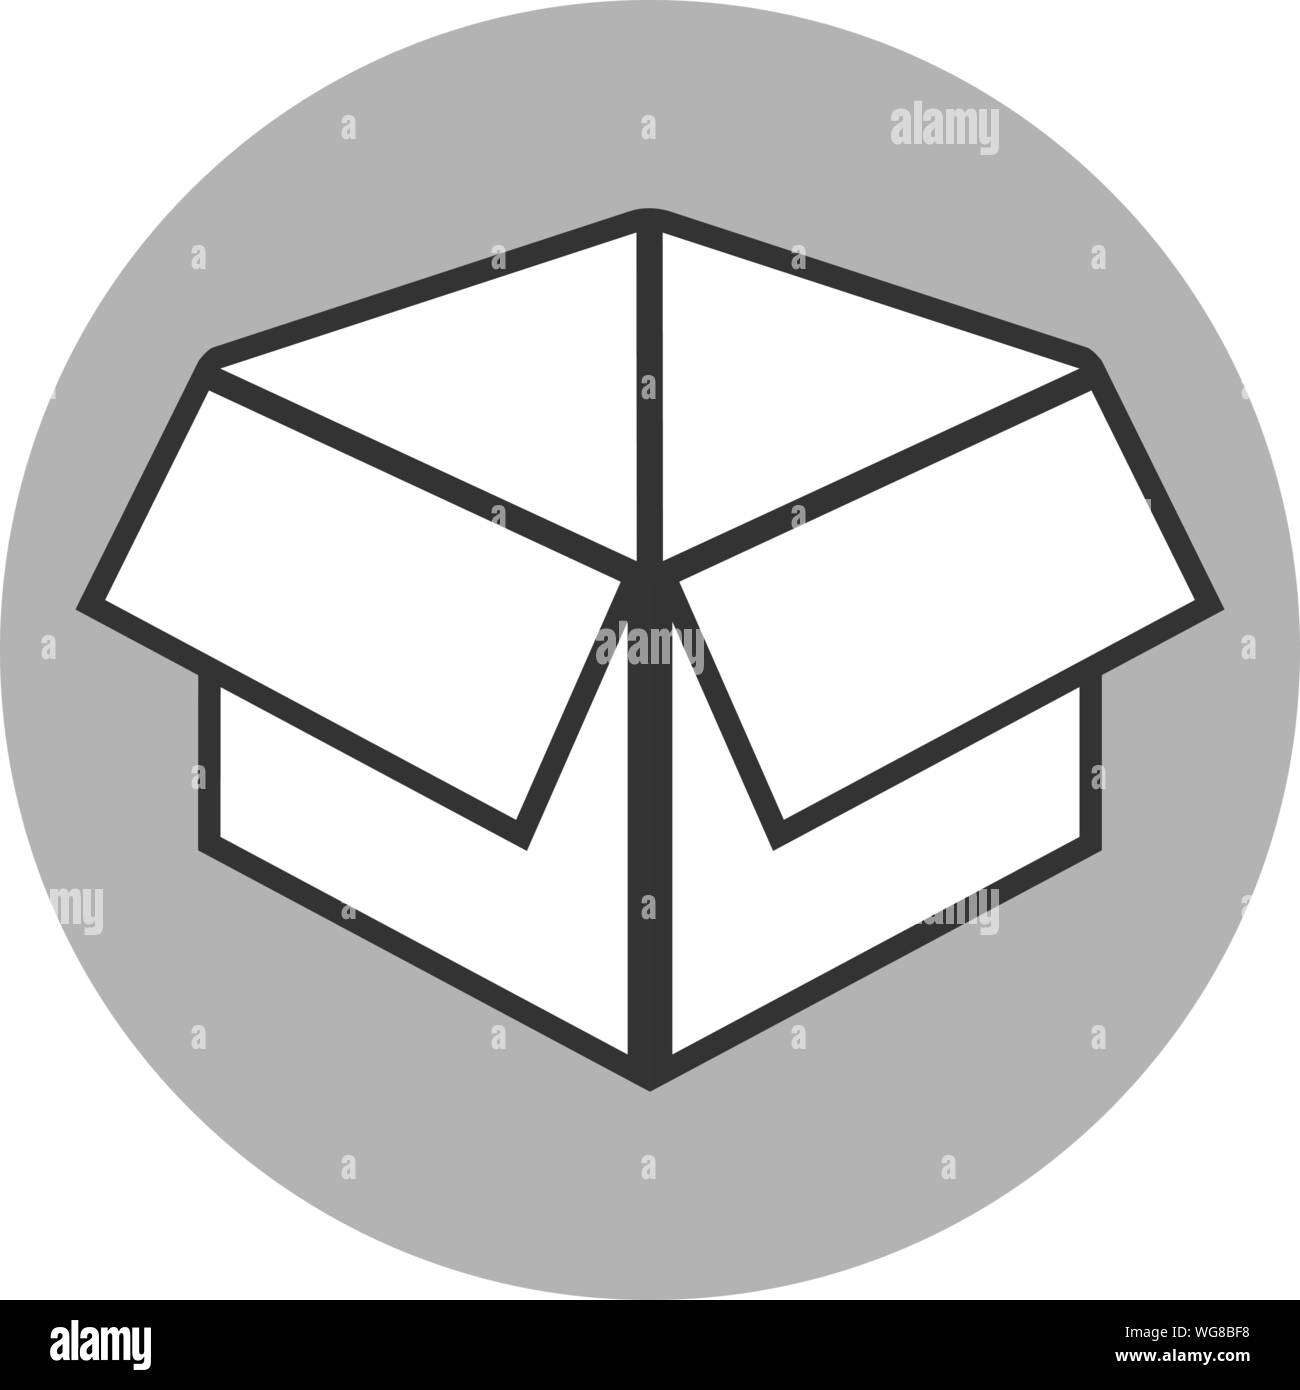 Einfache offenen Schwarzen und Weißen Karton oder Paket Symbol Vektor illustration Stock Vektor